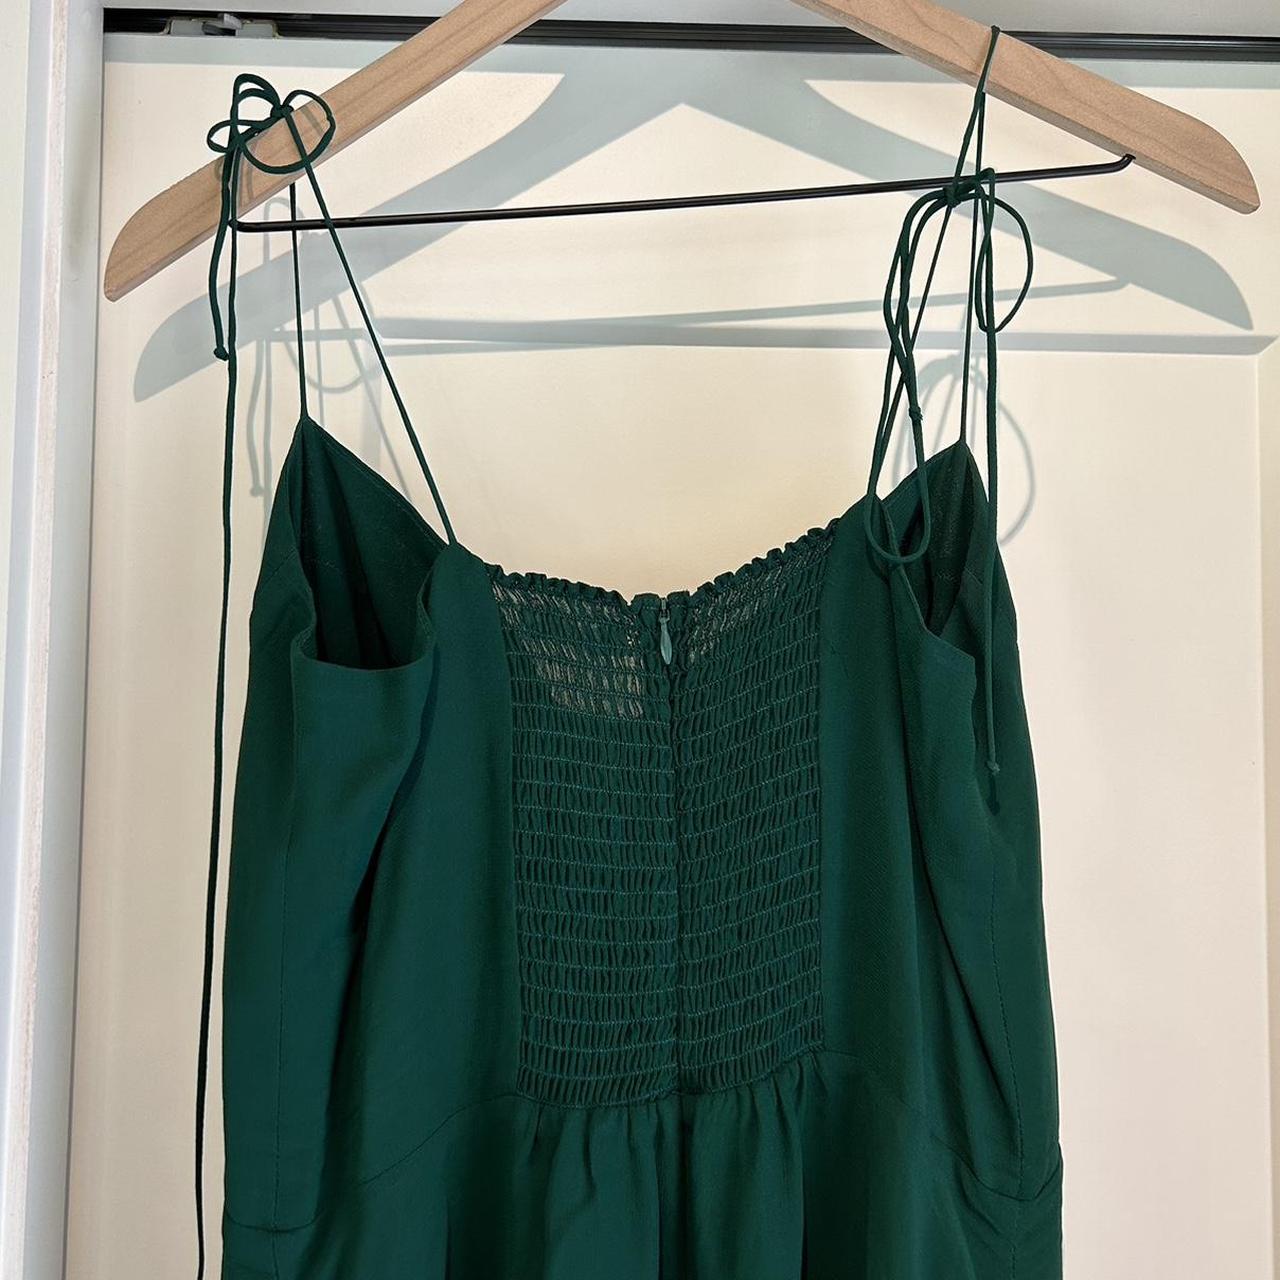 Reformation Juliette Dress in Emerald Women’s Size... - Depop